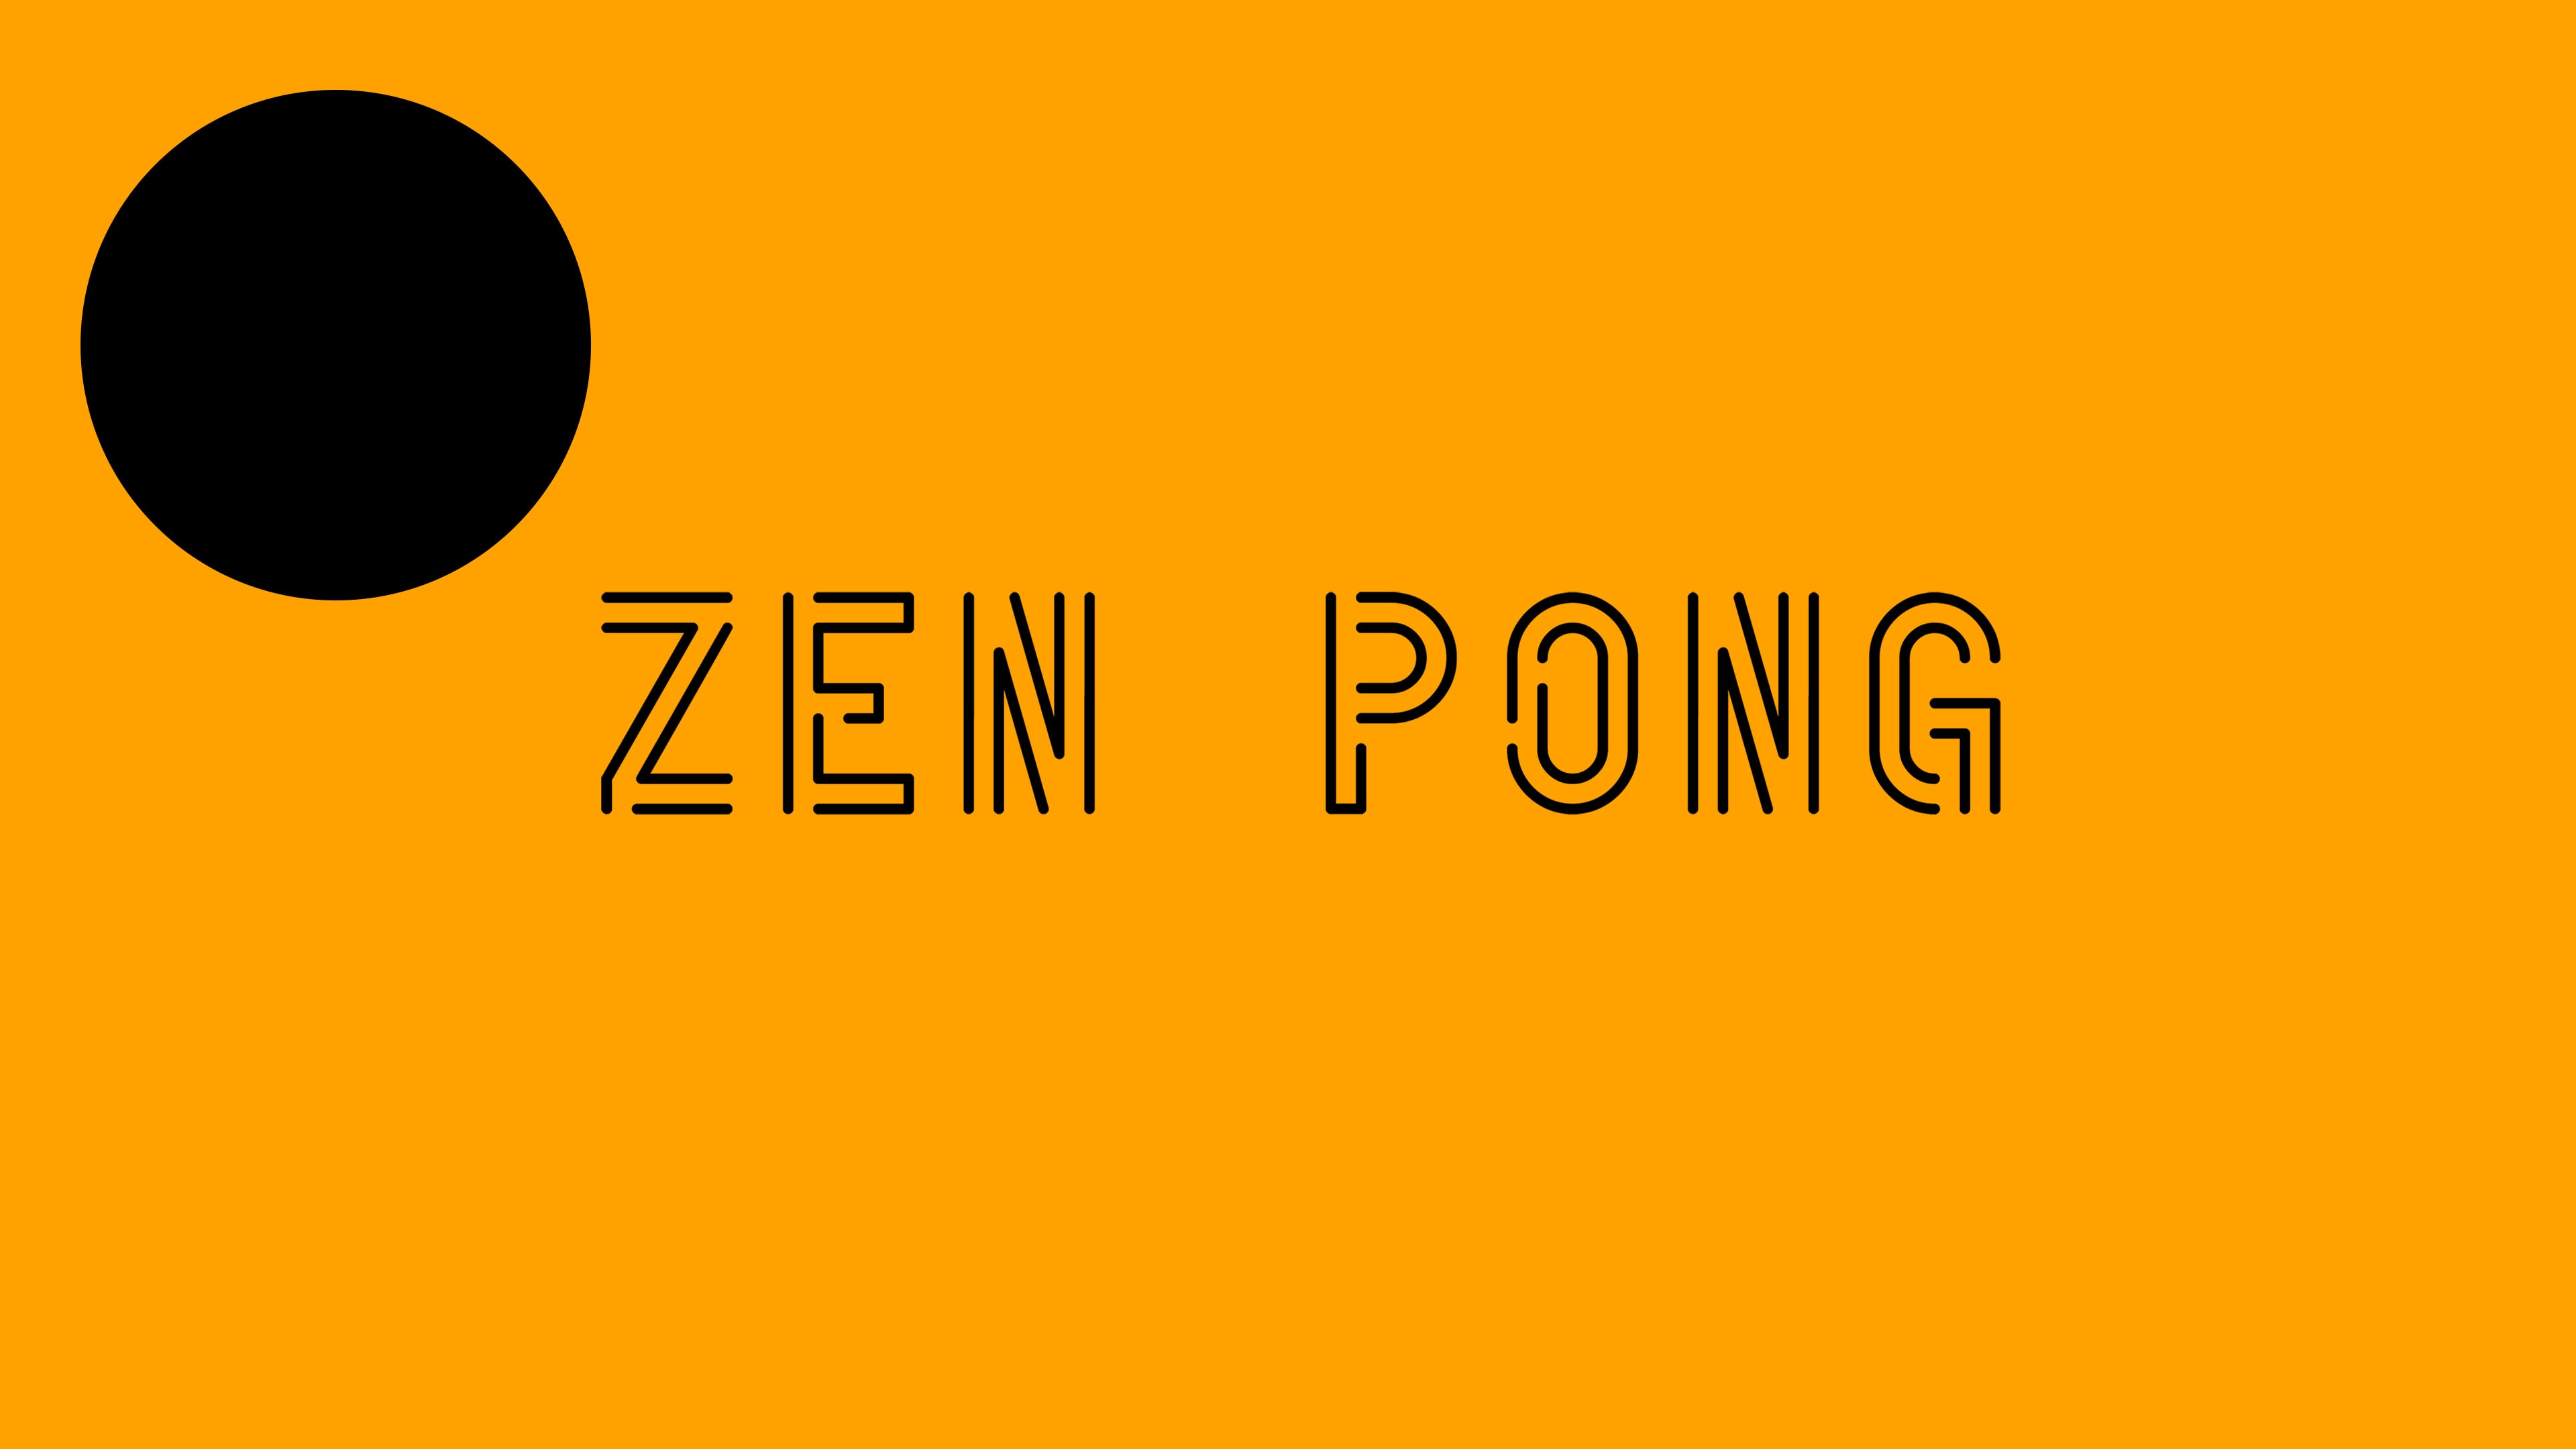 Zen Pong